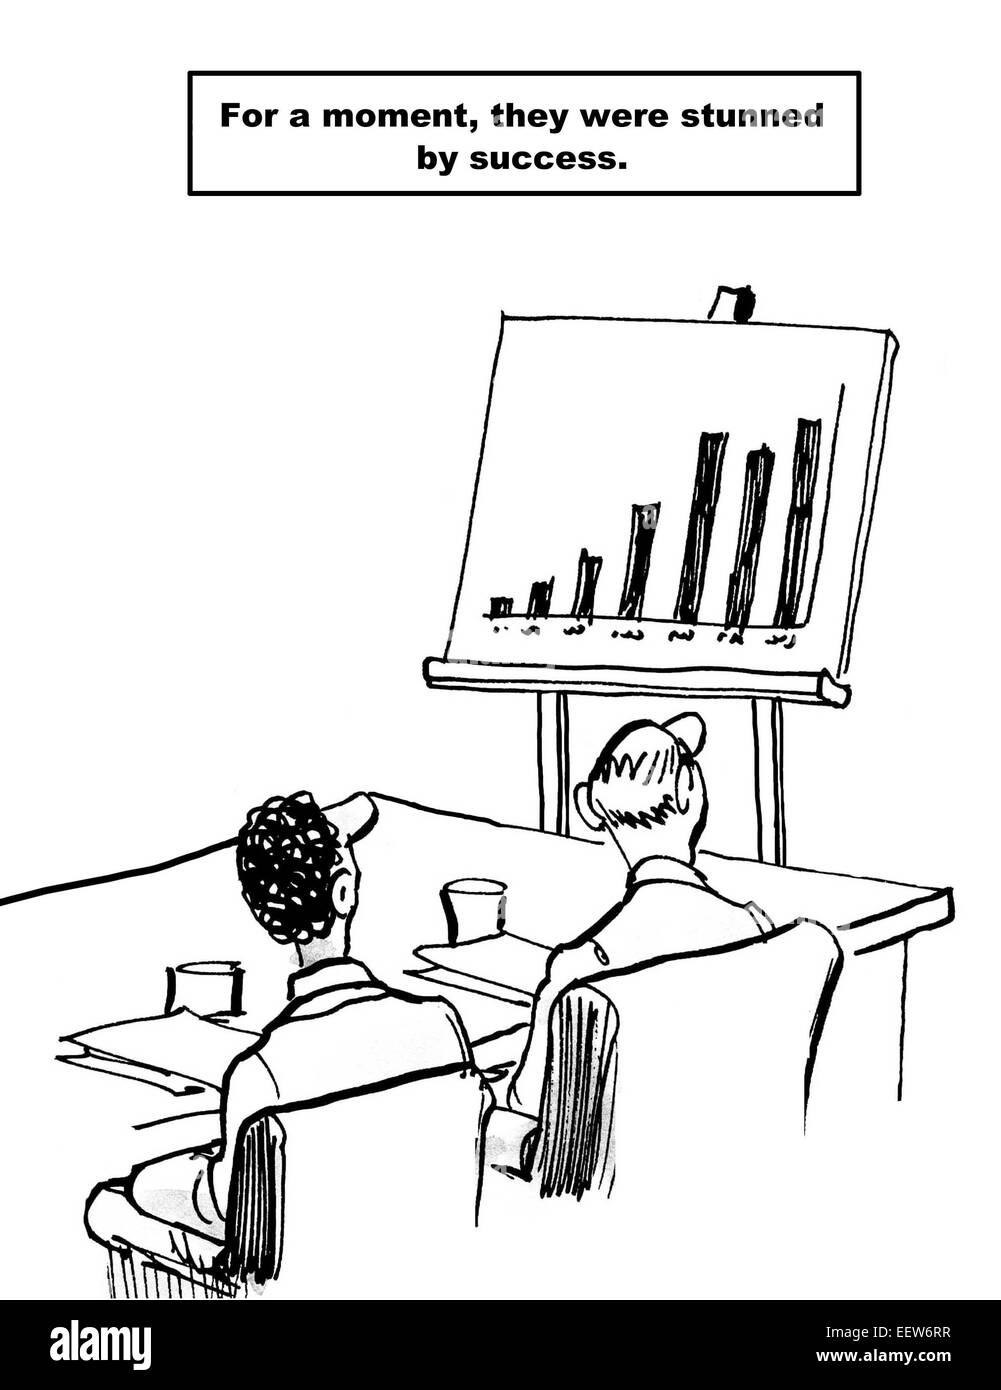 Caricature de businesspeople looking at la réussite d'un tableau de résultats financiers, pour un instant, ils ont été stupéfaits par le succès. Banque D'Images